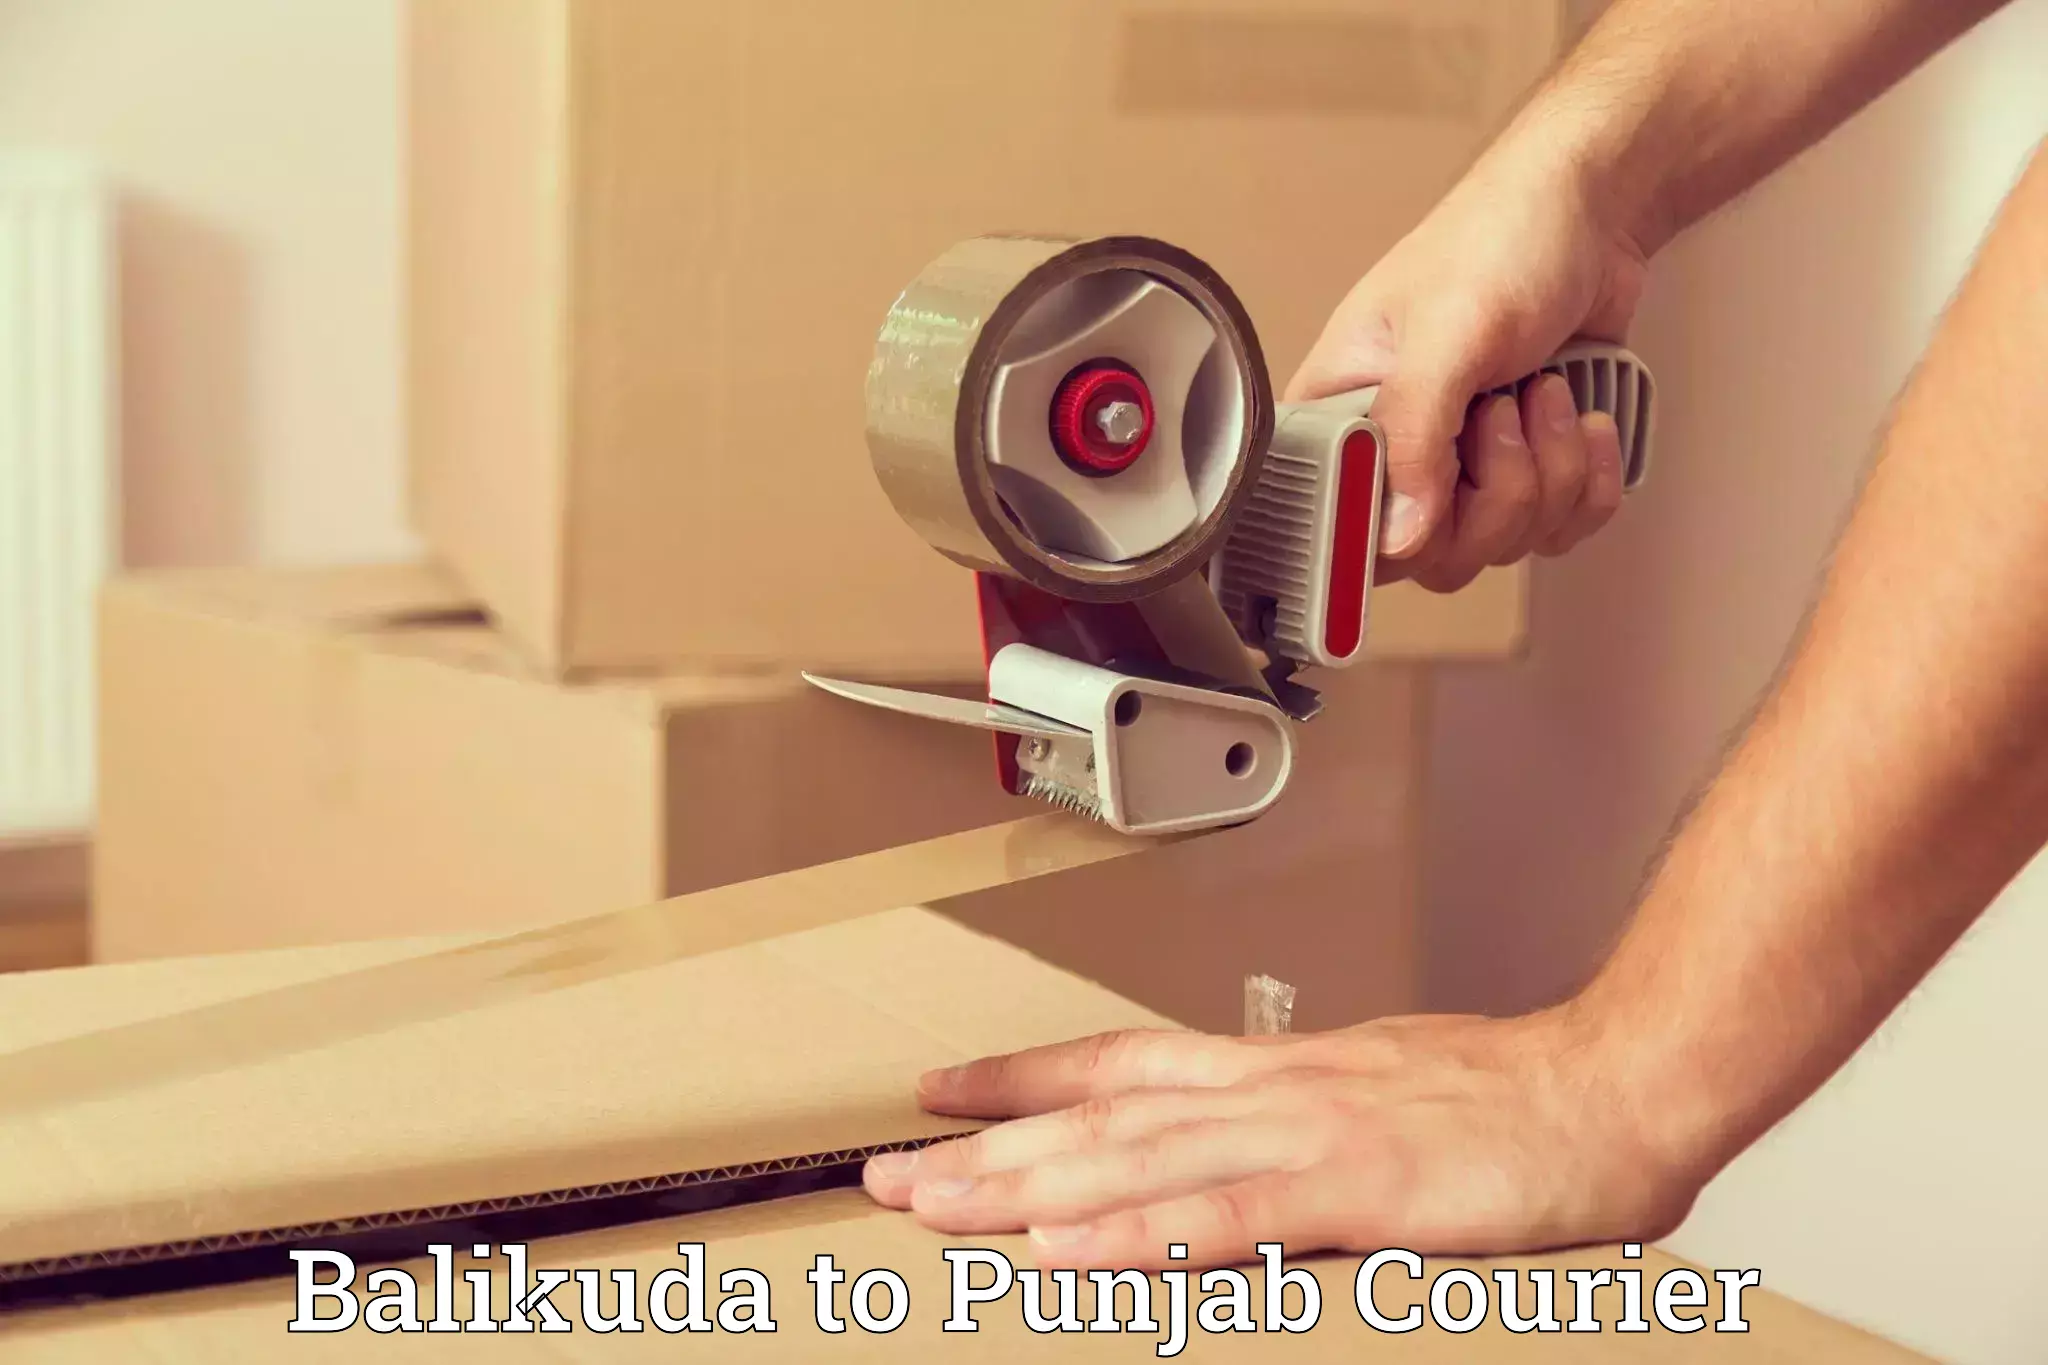 Skilled movers Balikuda to Punjab